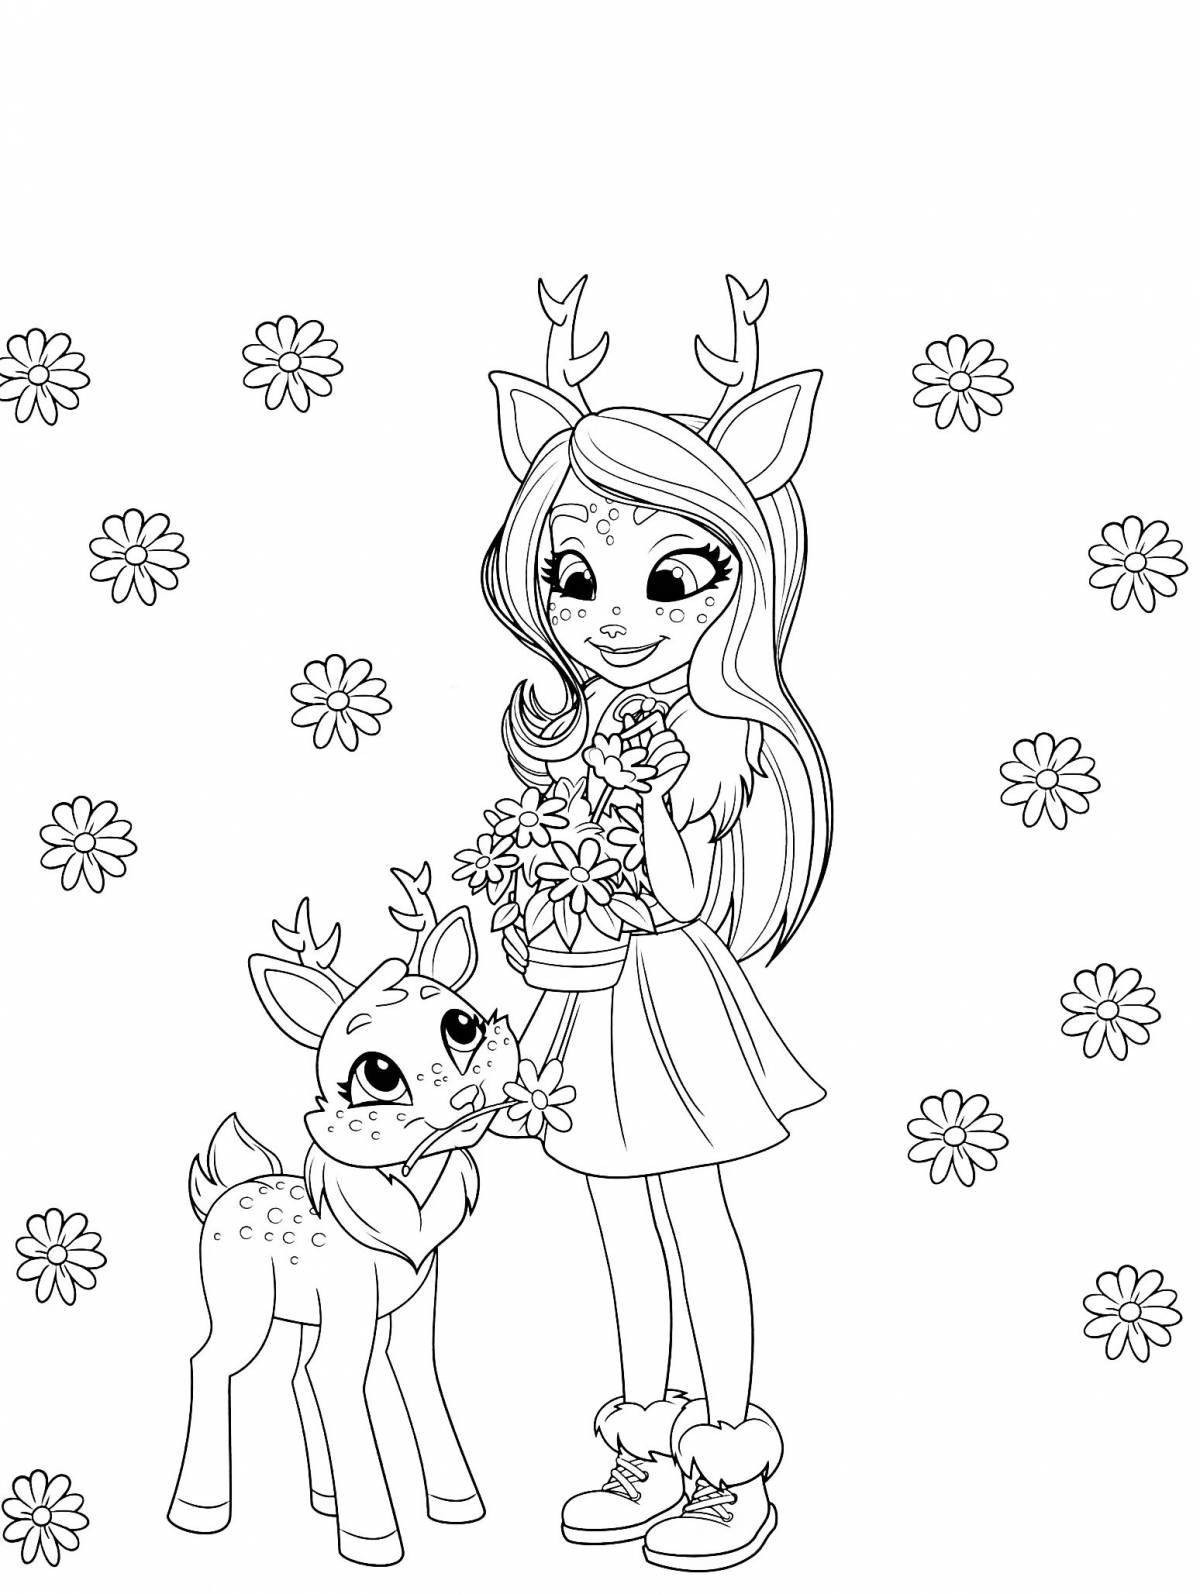 Fancy deer coloring page